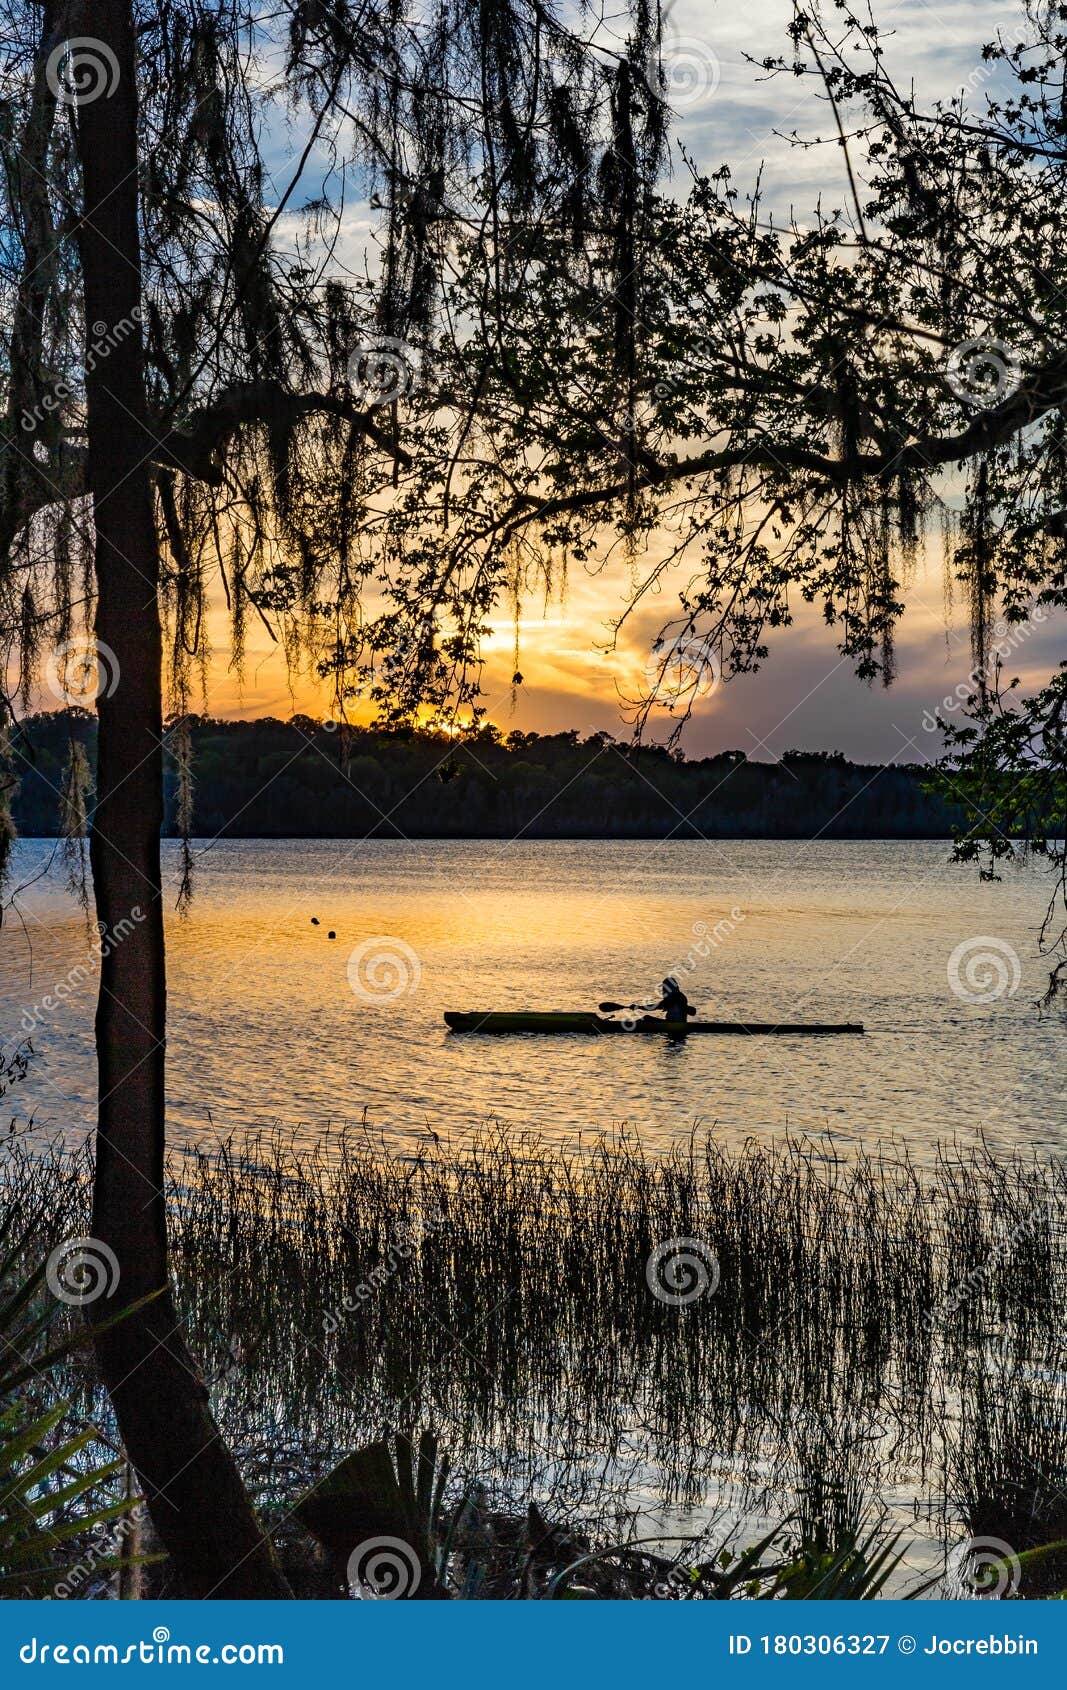 rower paddling down pond in payne`s prairie in florida